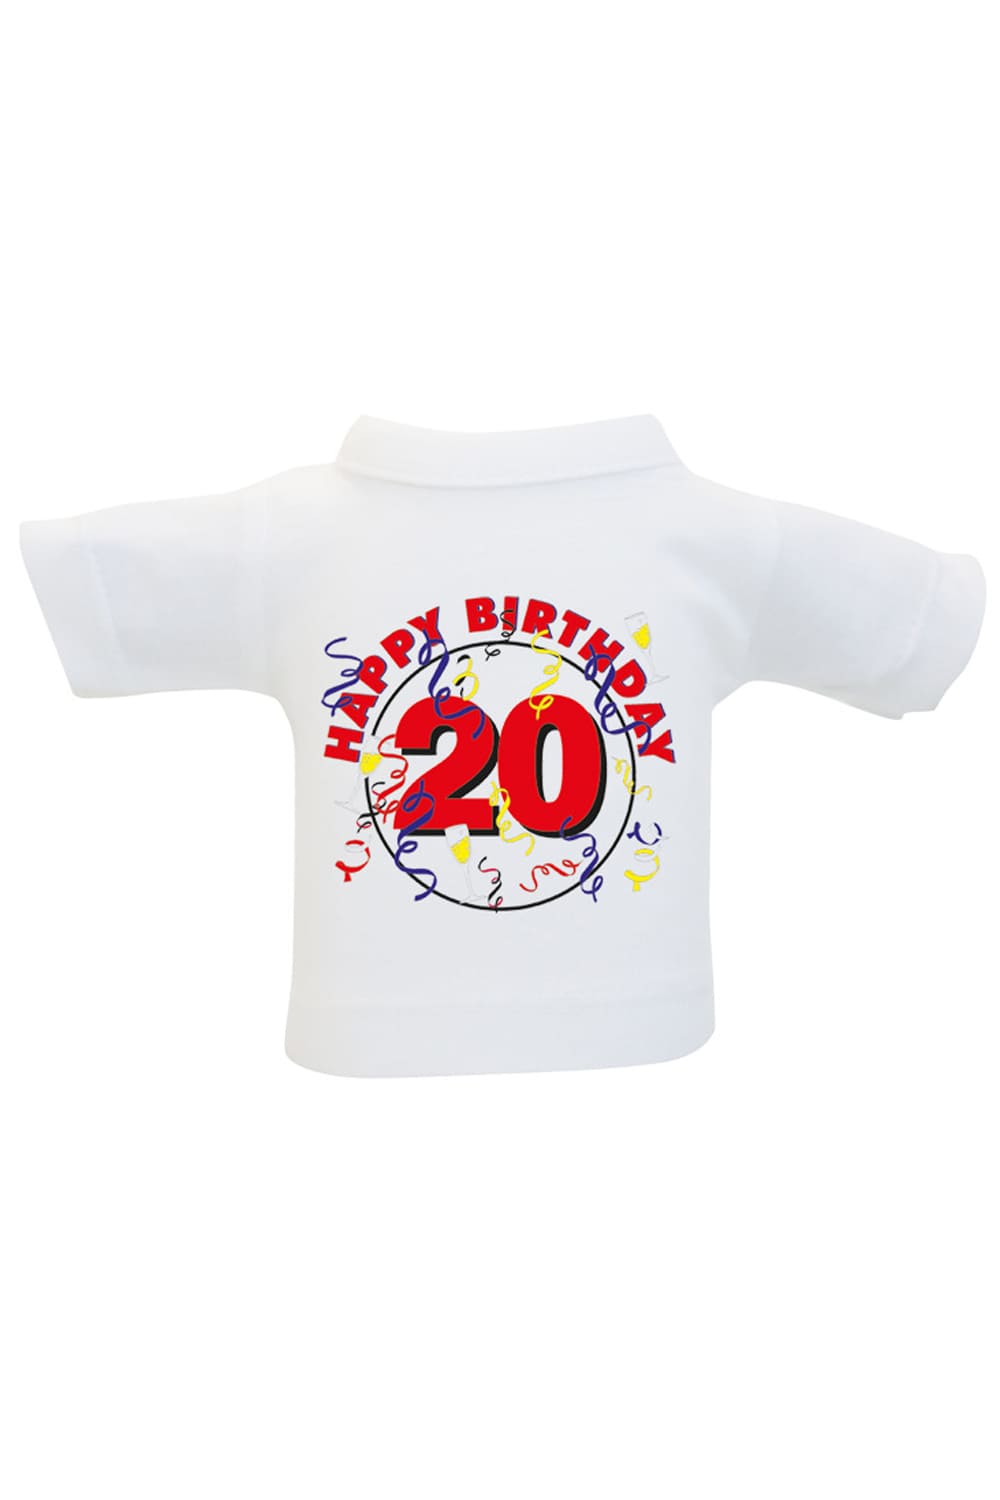 Das Mini T-Shirt ist ein lustiges Accessoire fuer Plueschtiere, Geschenke und Flaschen. Einfach das Mini Shirt einer Weinflasche oder einem Teddy anziehen und fertig ist die originelle Geschenkverpackung. Kleines Spruchshirt mit der Aufschrift: Happy Birthday 20. 